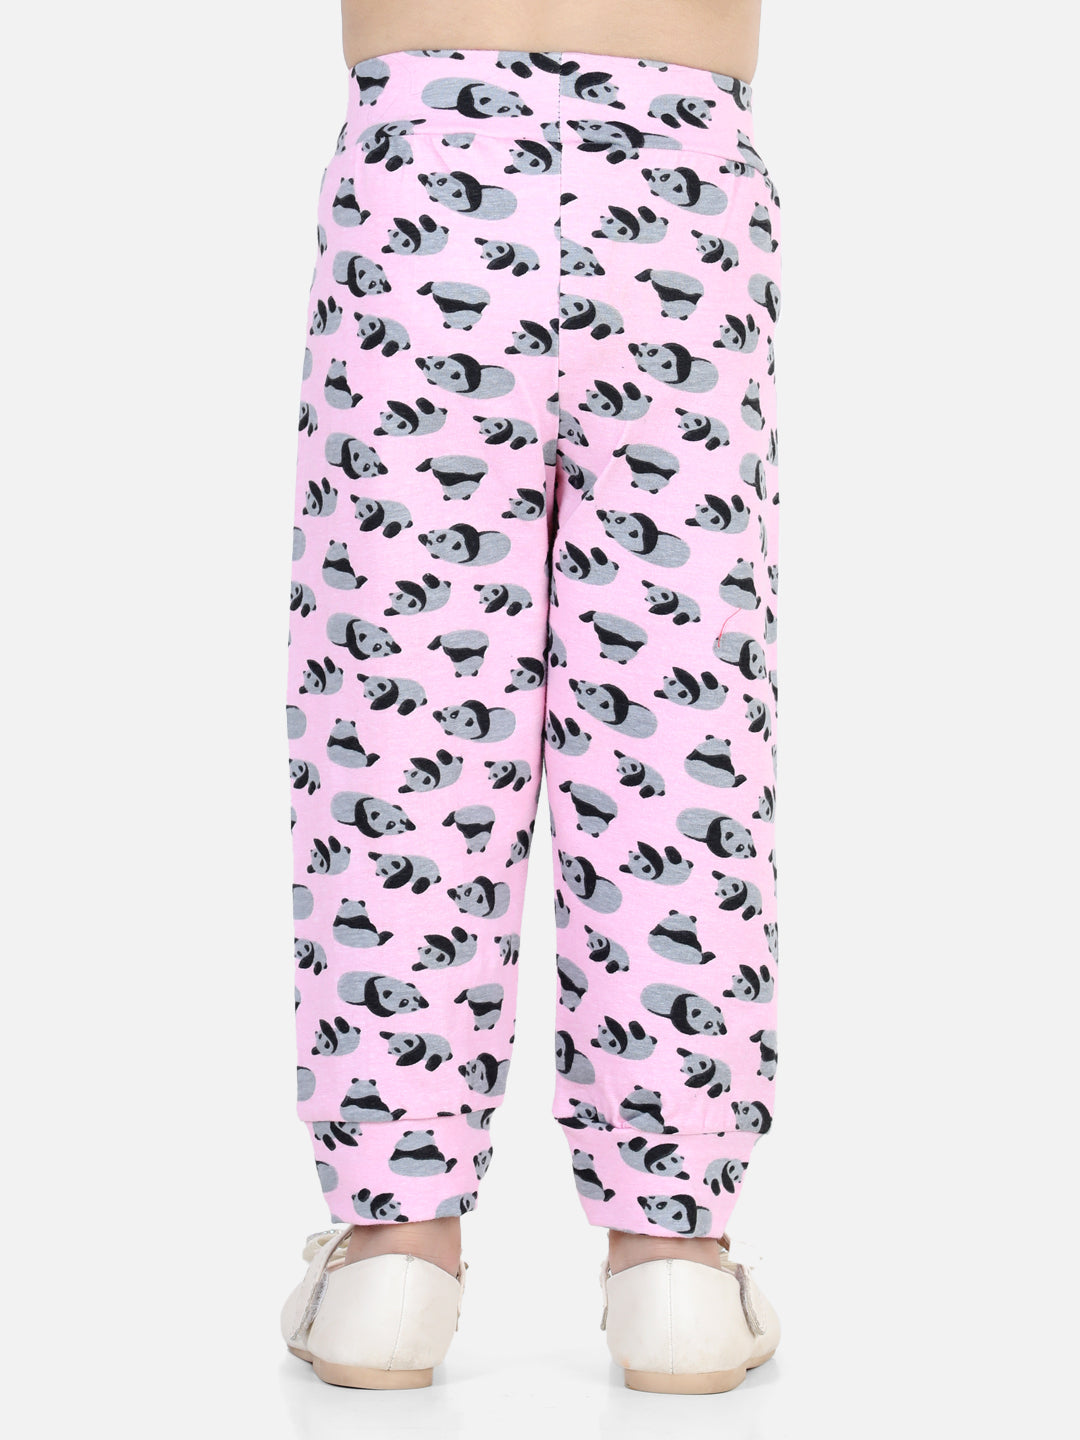 BownBee All Over Panda Printed Leggings - Pink